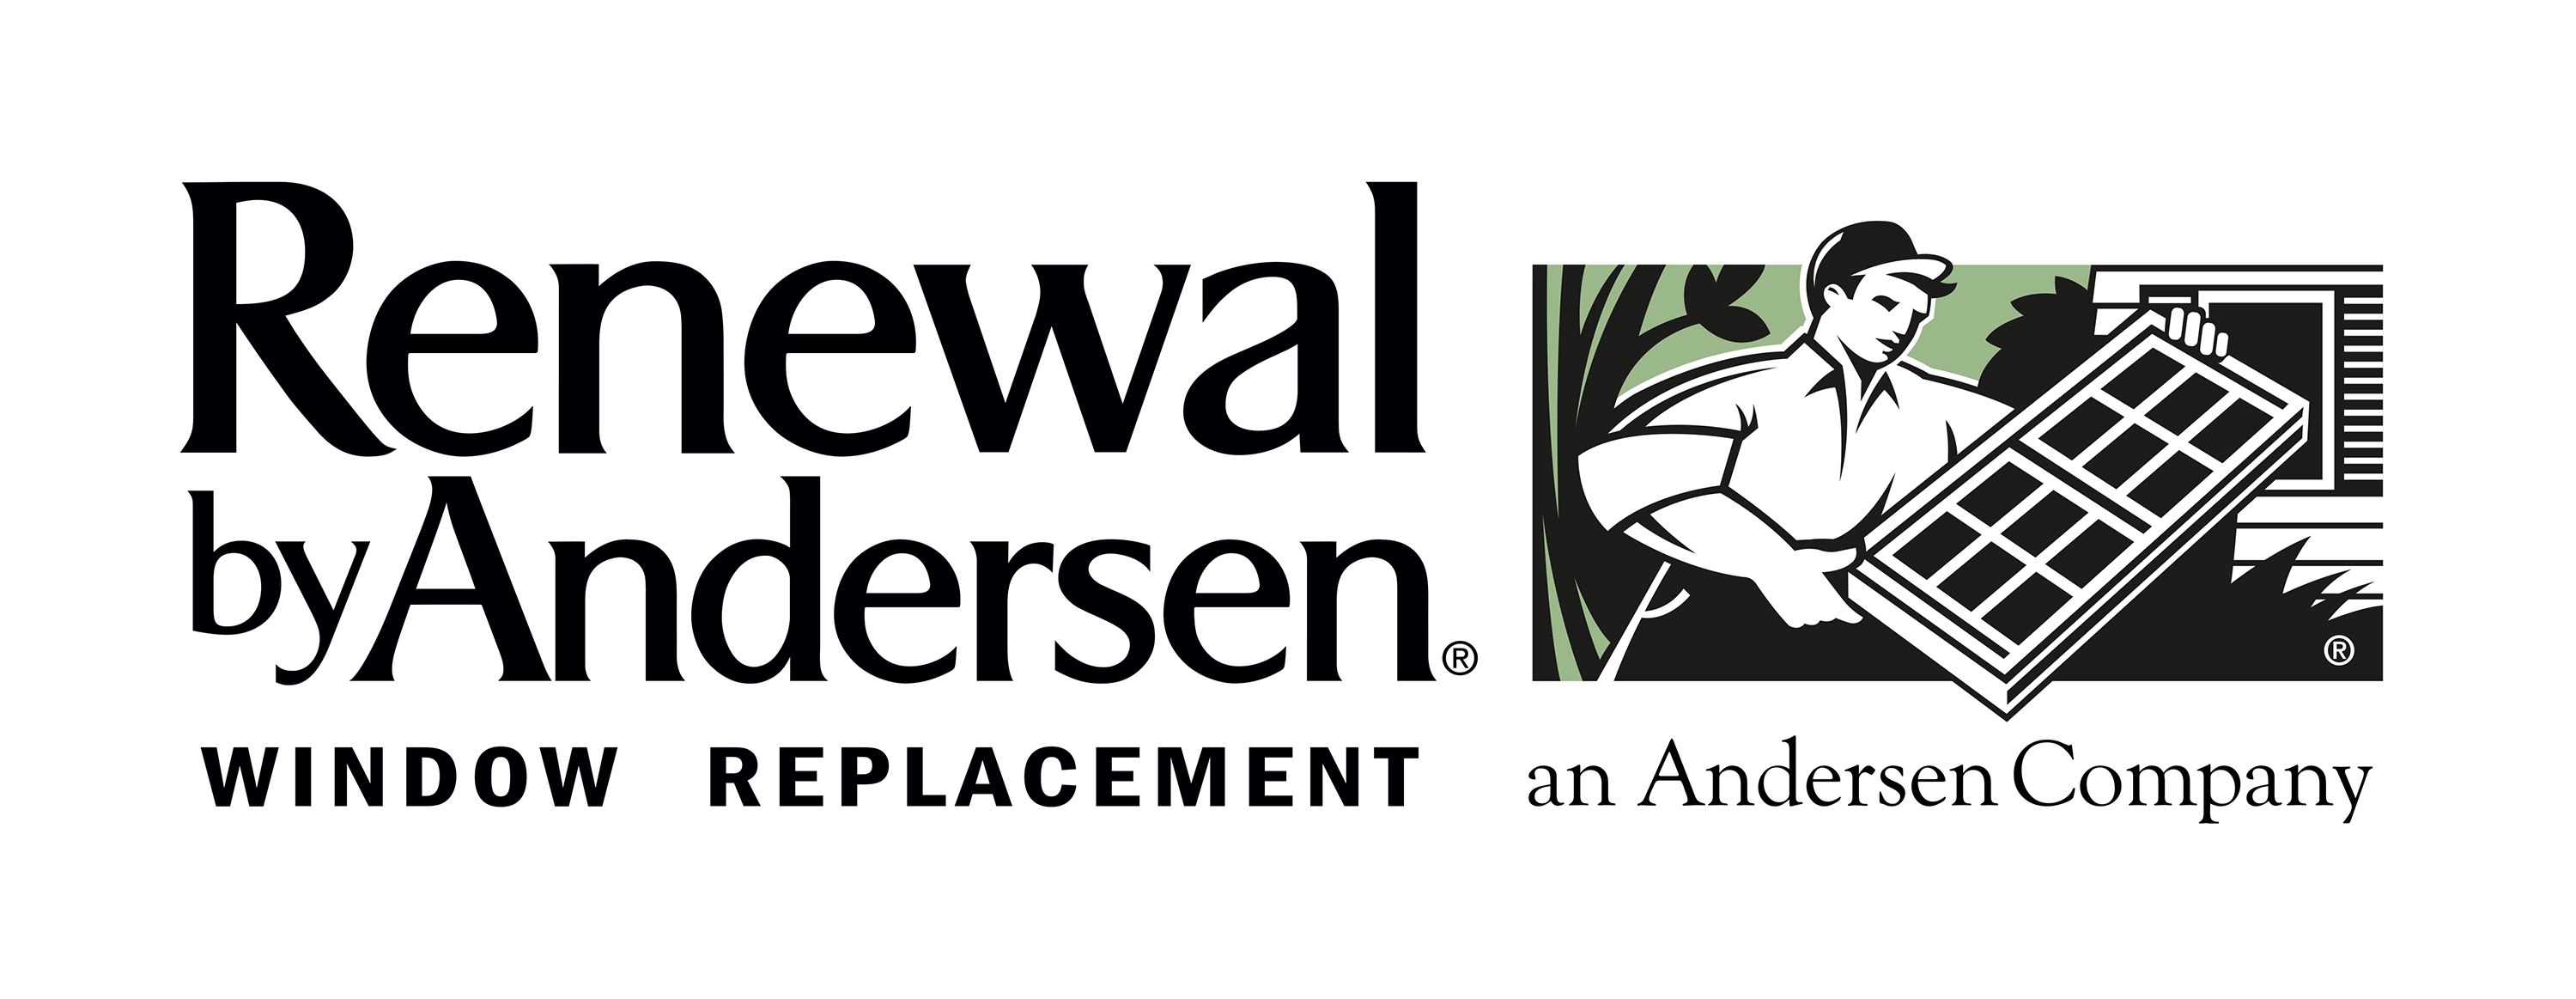 Renewal by Andersen Company Logo